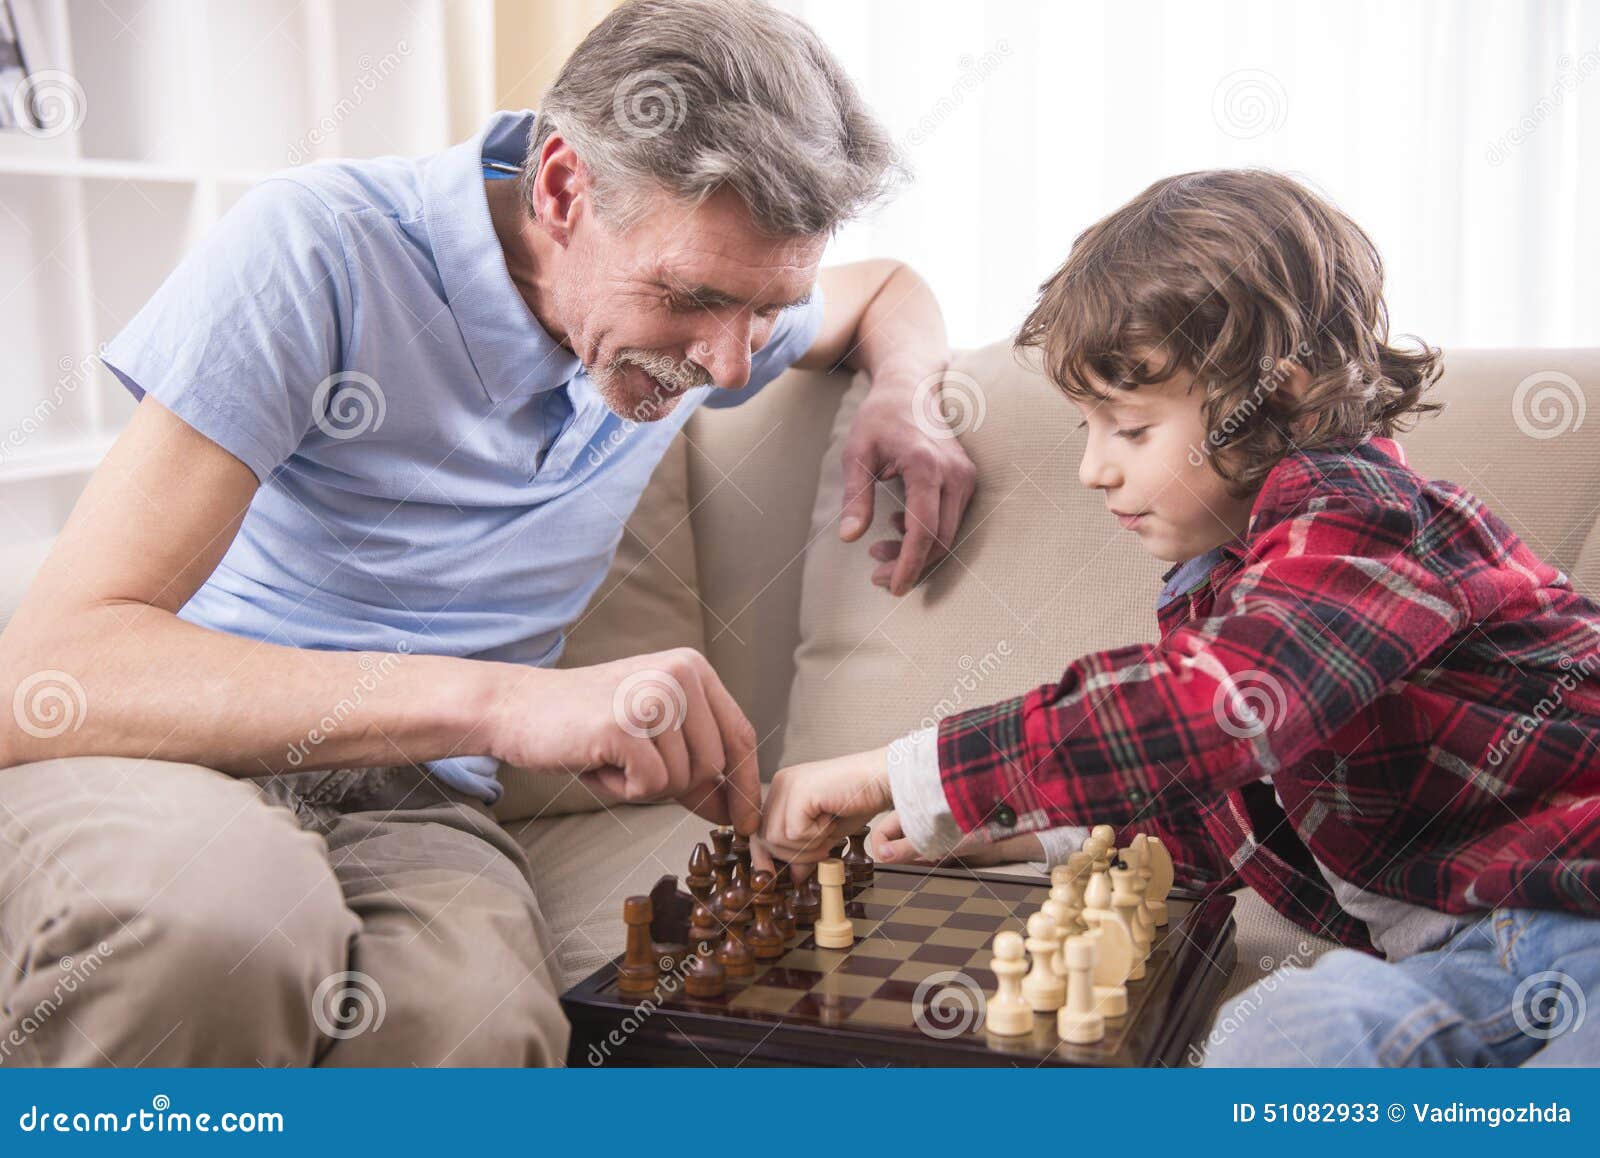 Передача опыта новому поколению. Старшее и младшее поколение. Дед и внук играют в шахматы. Опыт из поколения в поколение. Дети и старики передача опыта.